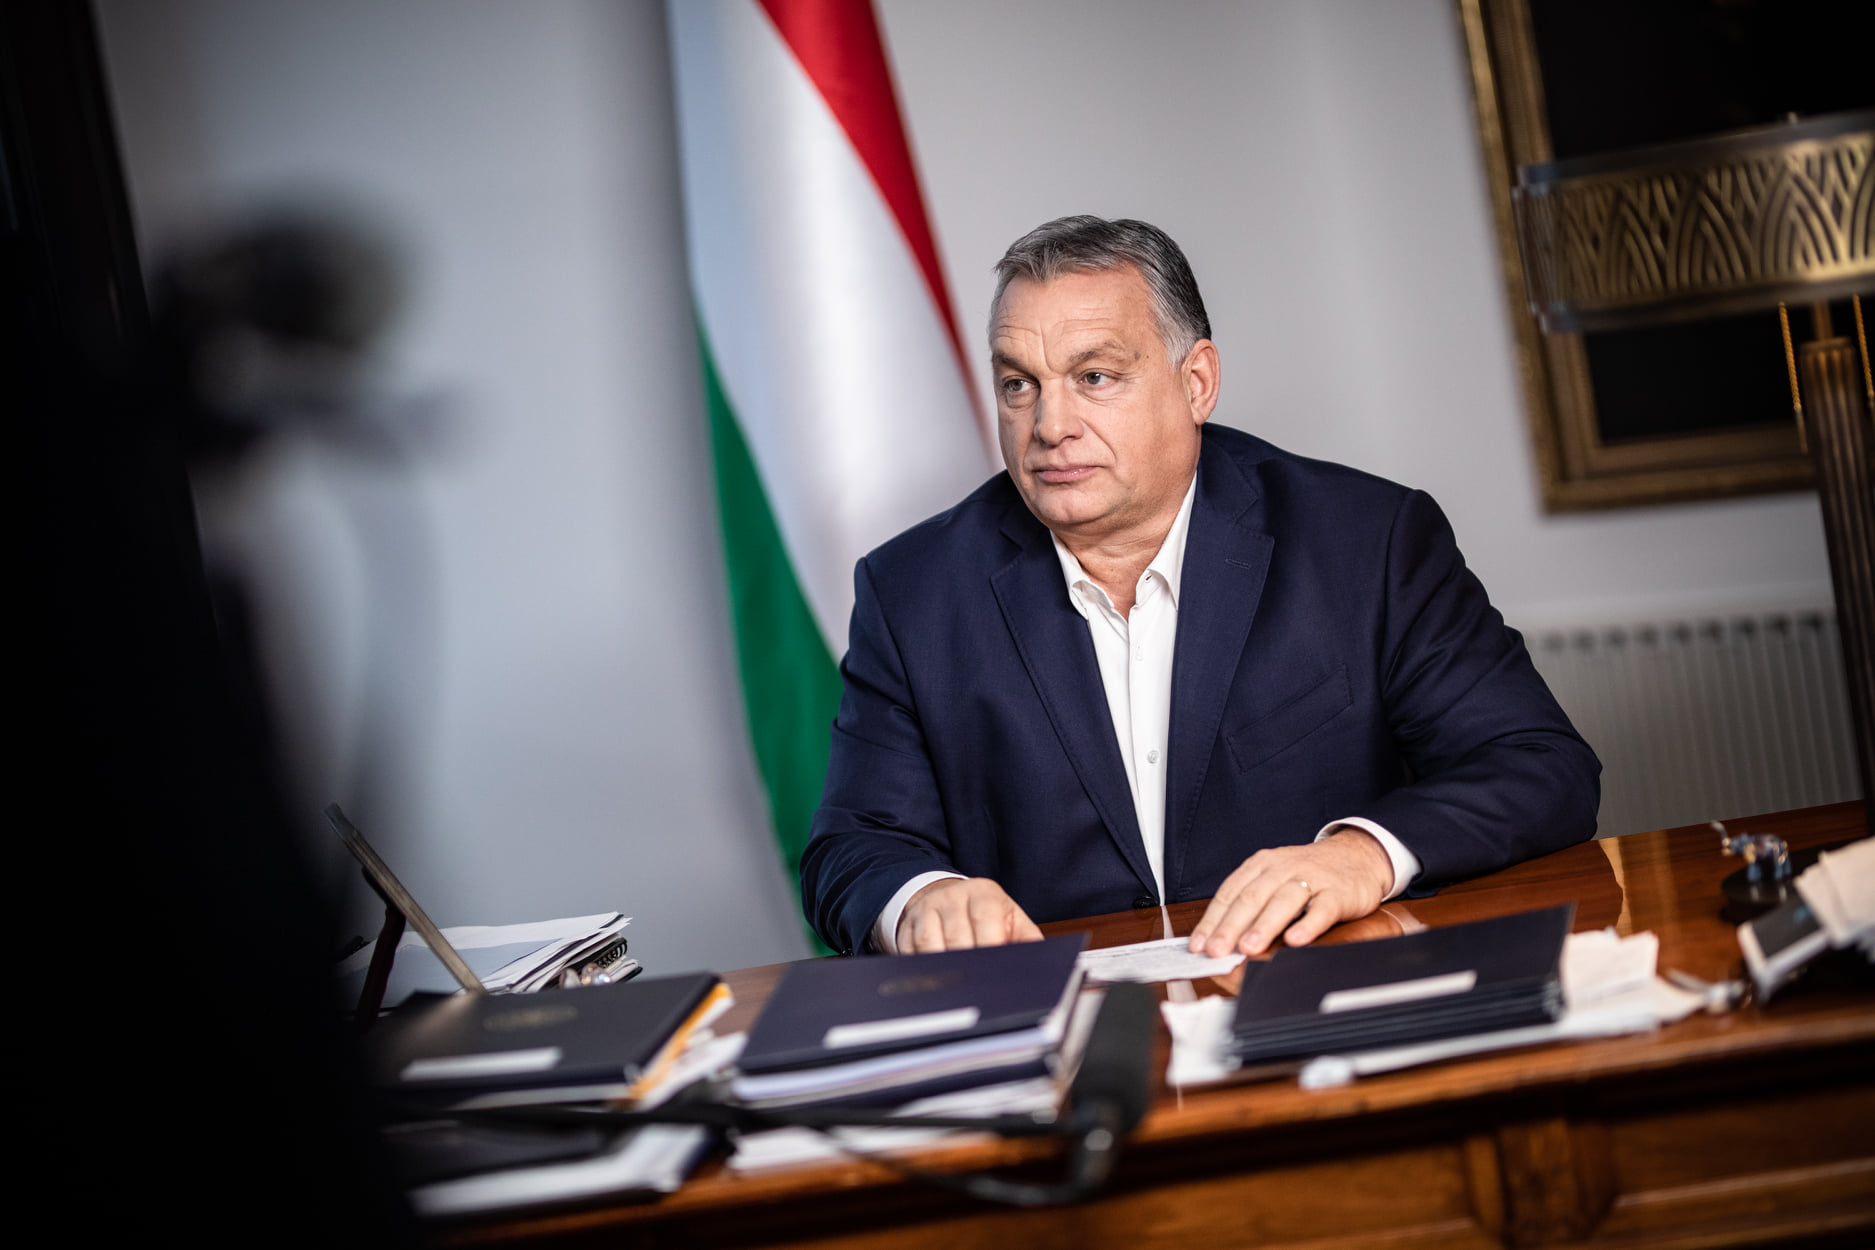 Orbán नए आर्थिक नियम